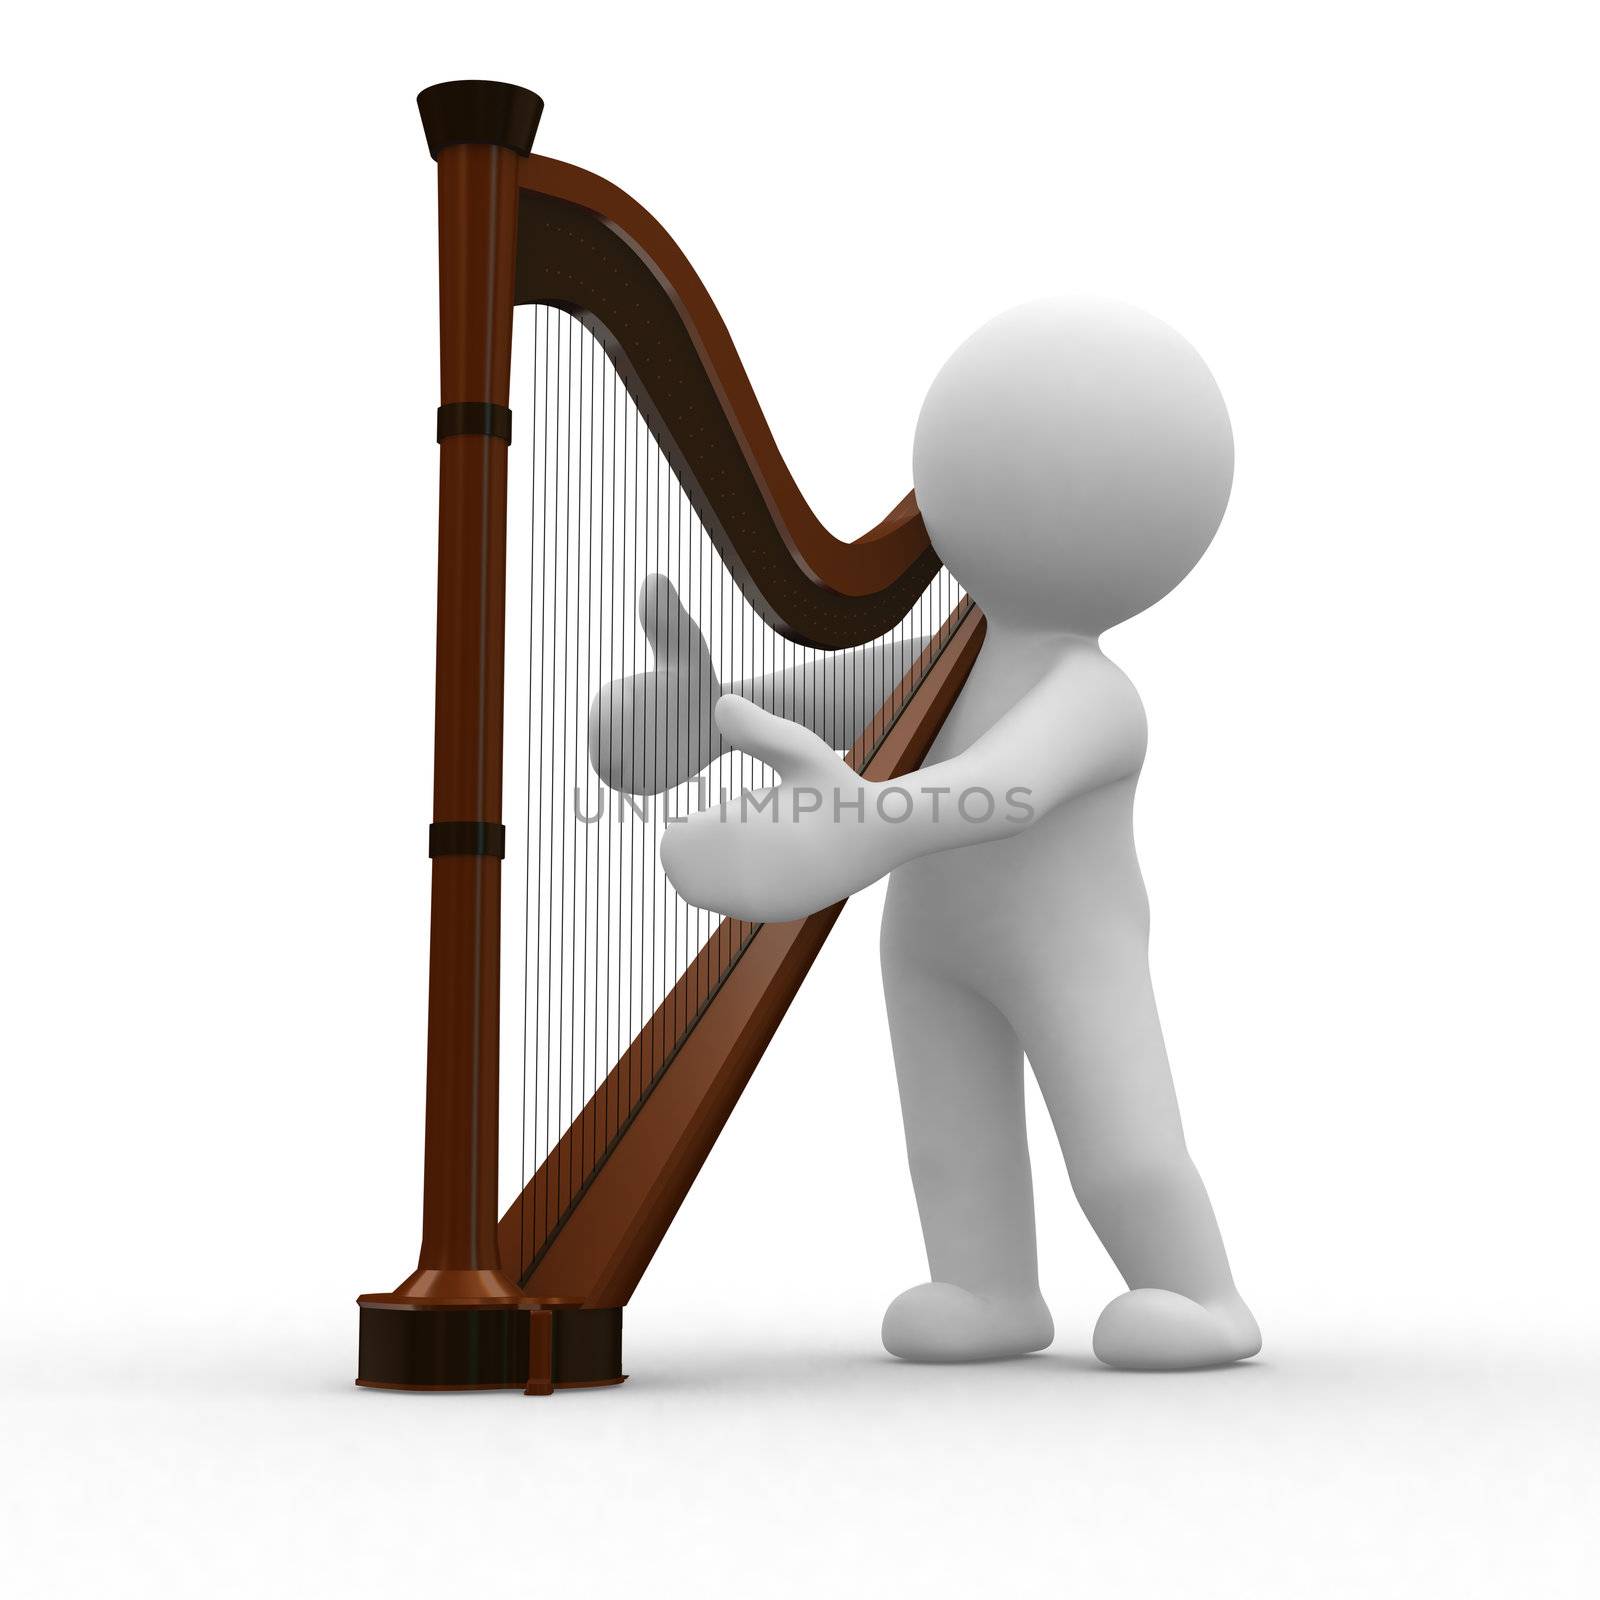 Harp by koun